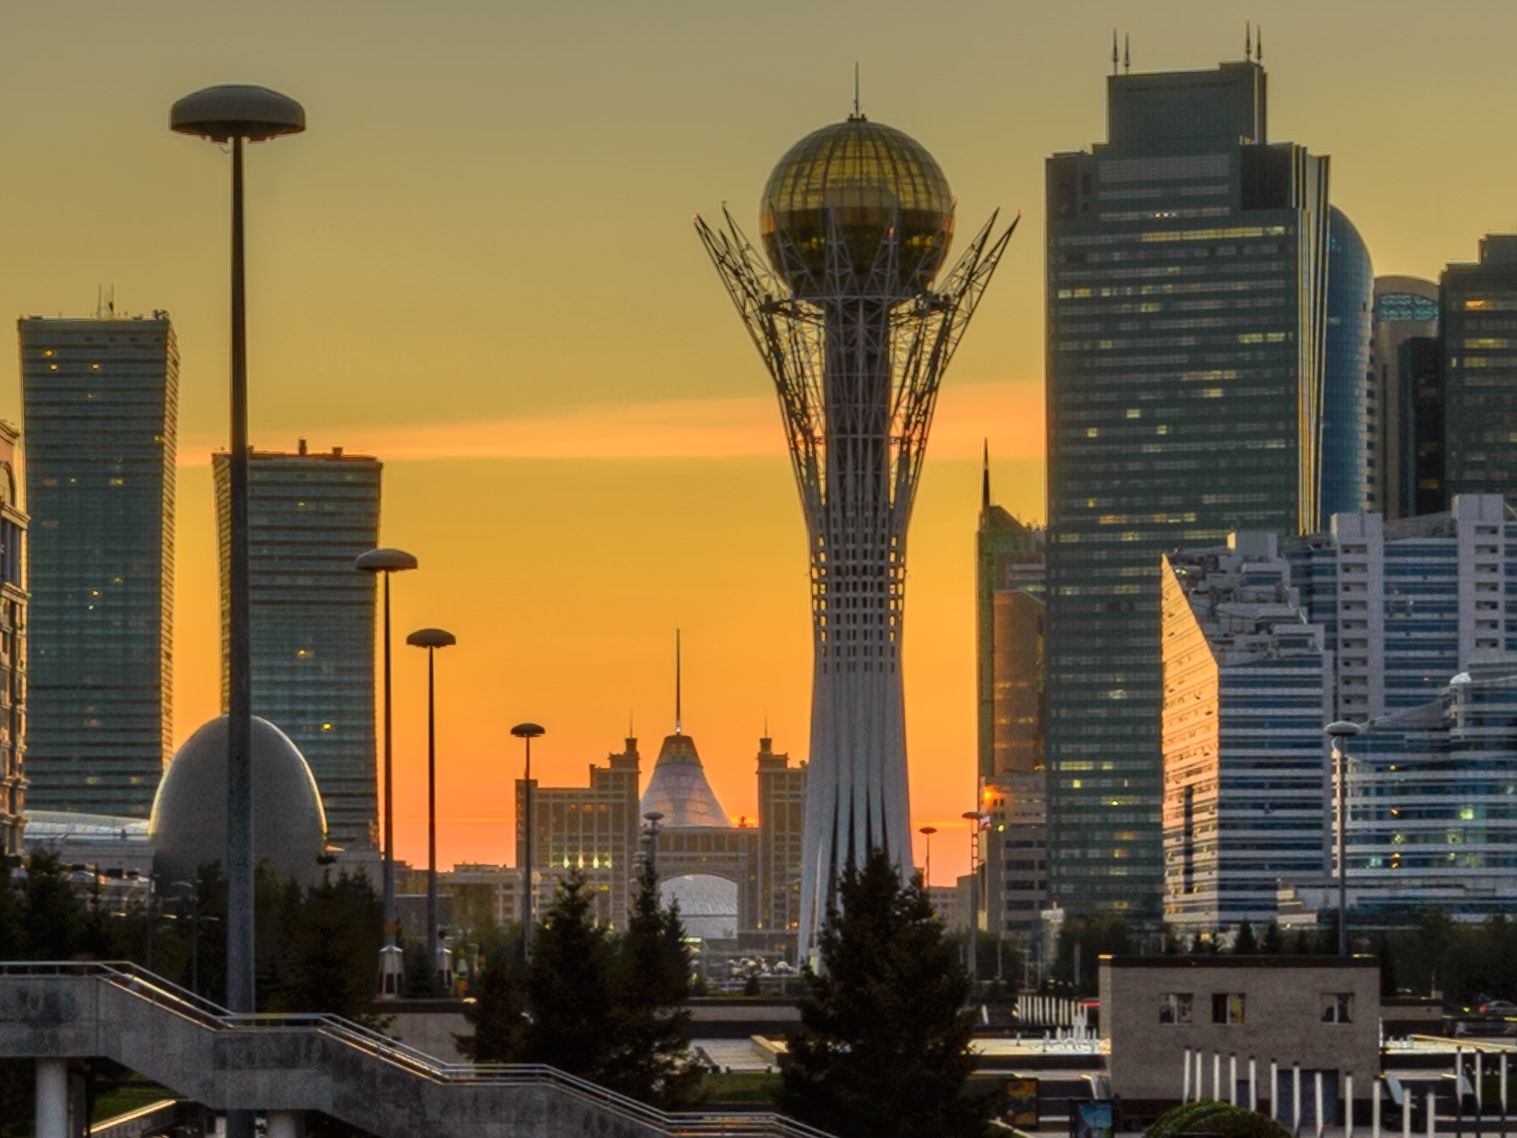 Столицу Казахстана Нур-Султан снова хотят переименовать в Астану #Омск #Общество #Сегодня